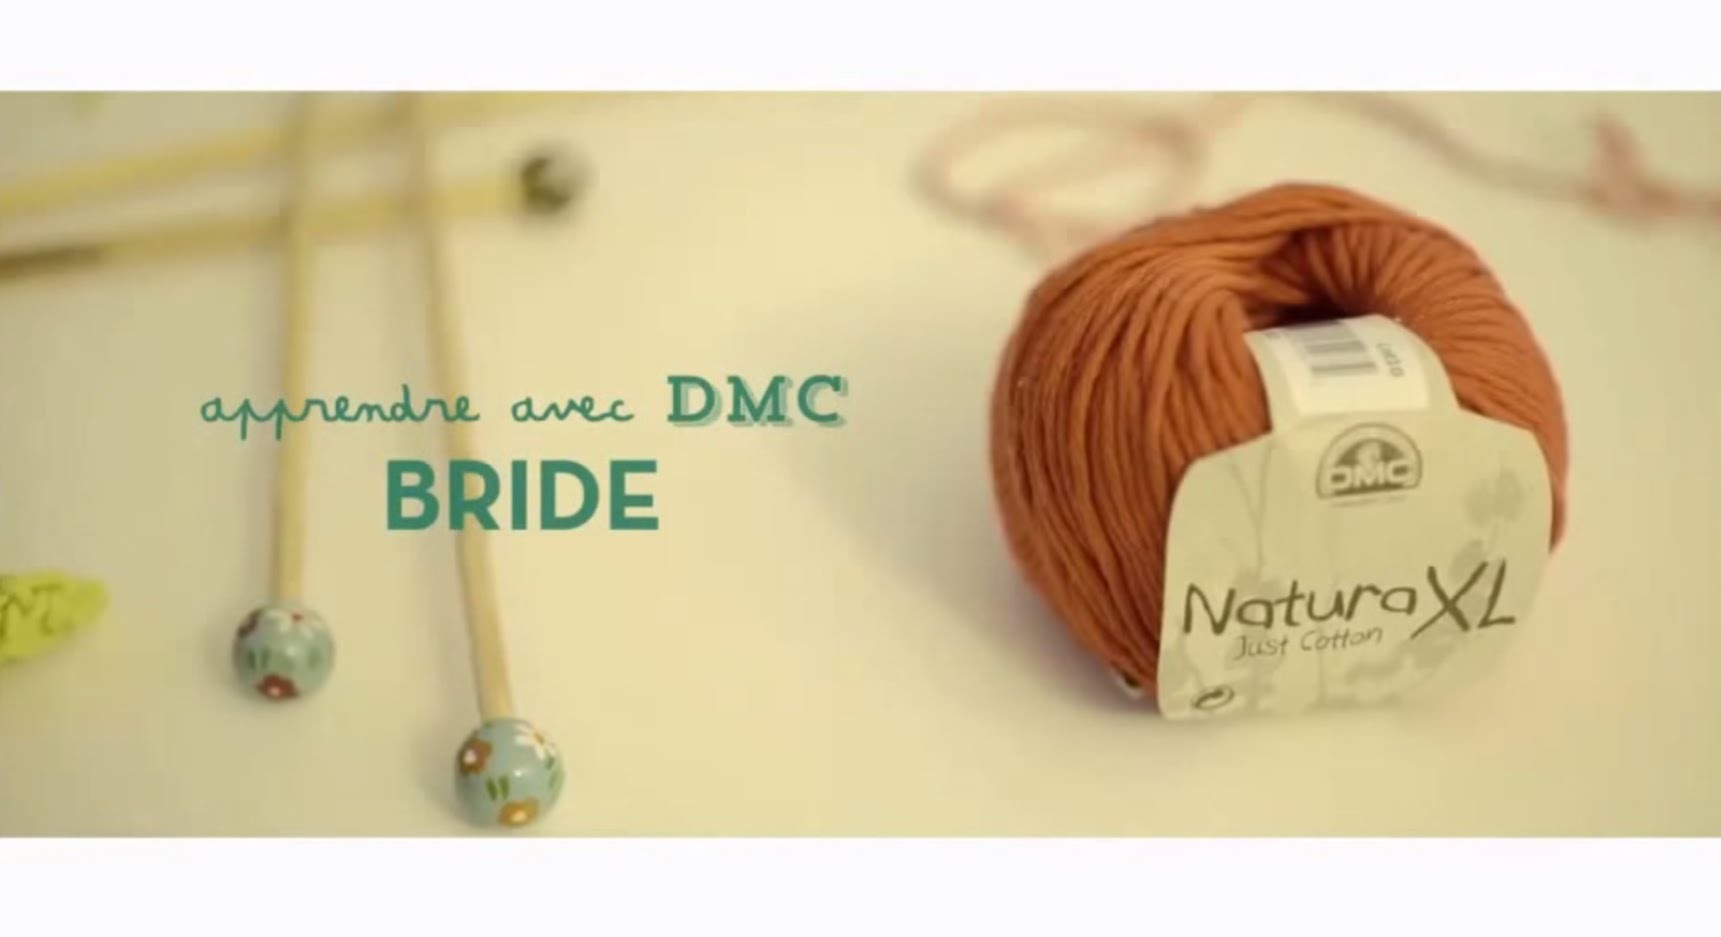 Tuto crochet : apprendre à faire une bride avec DMC